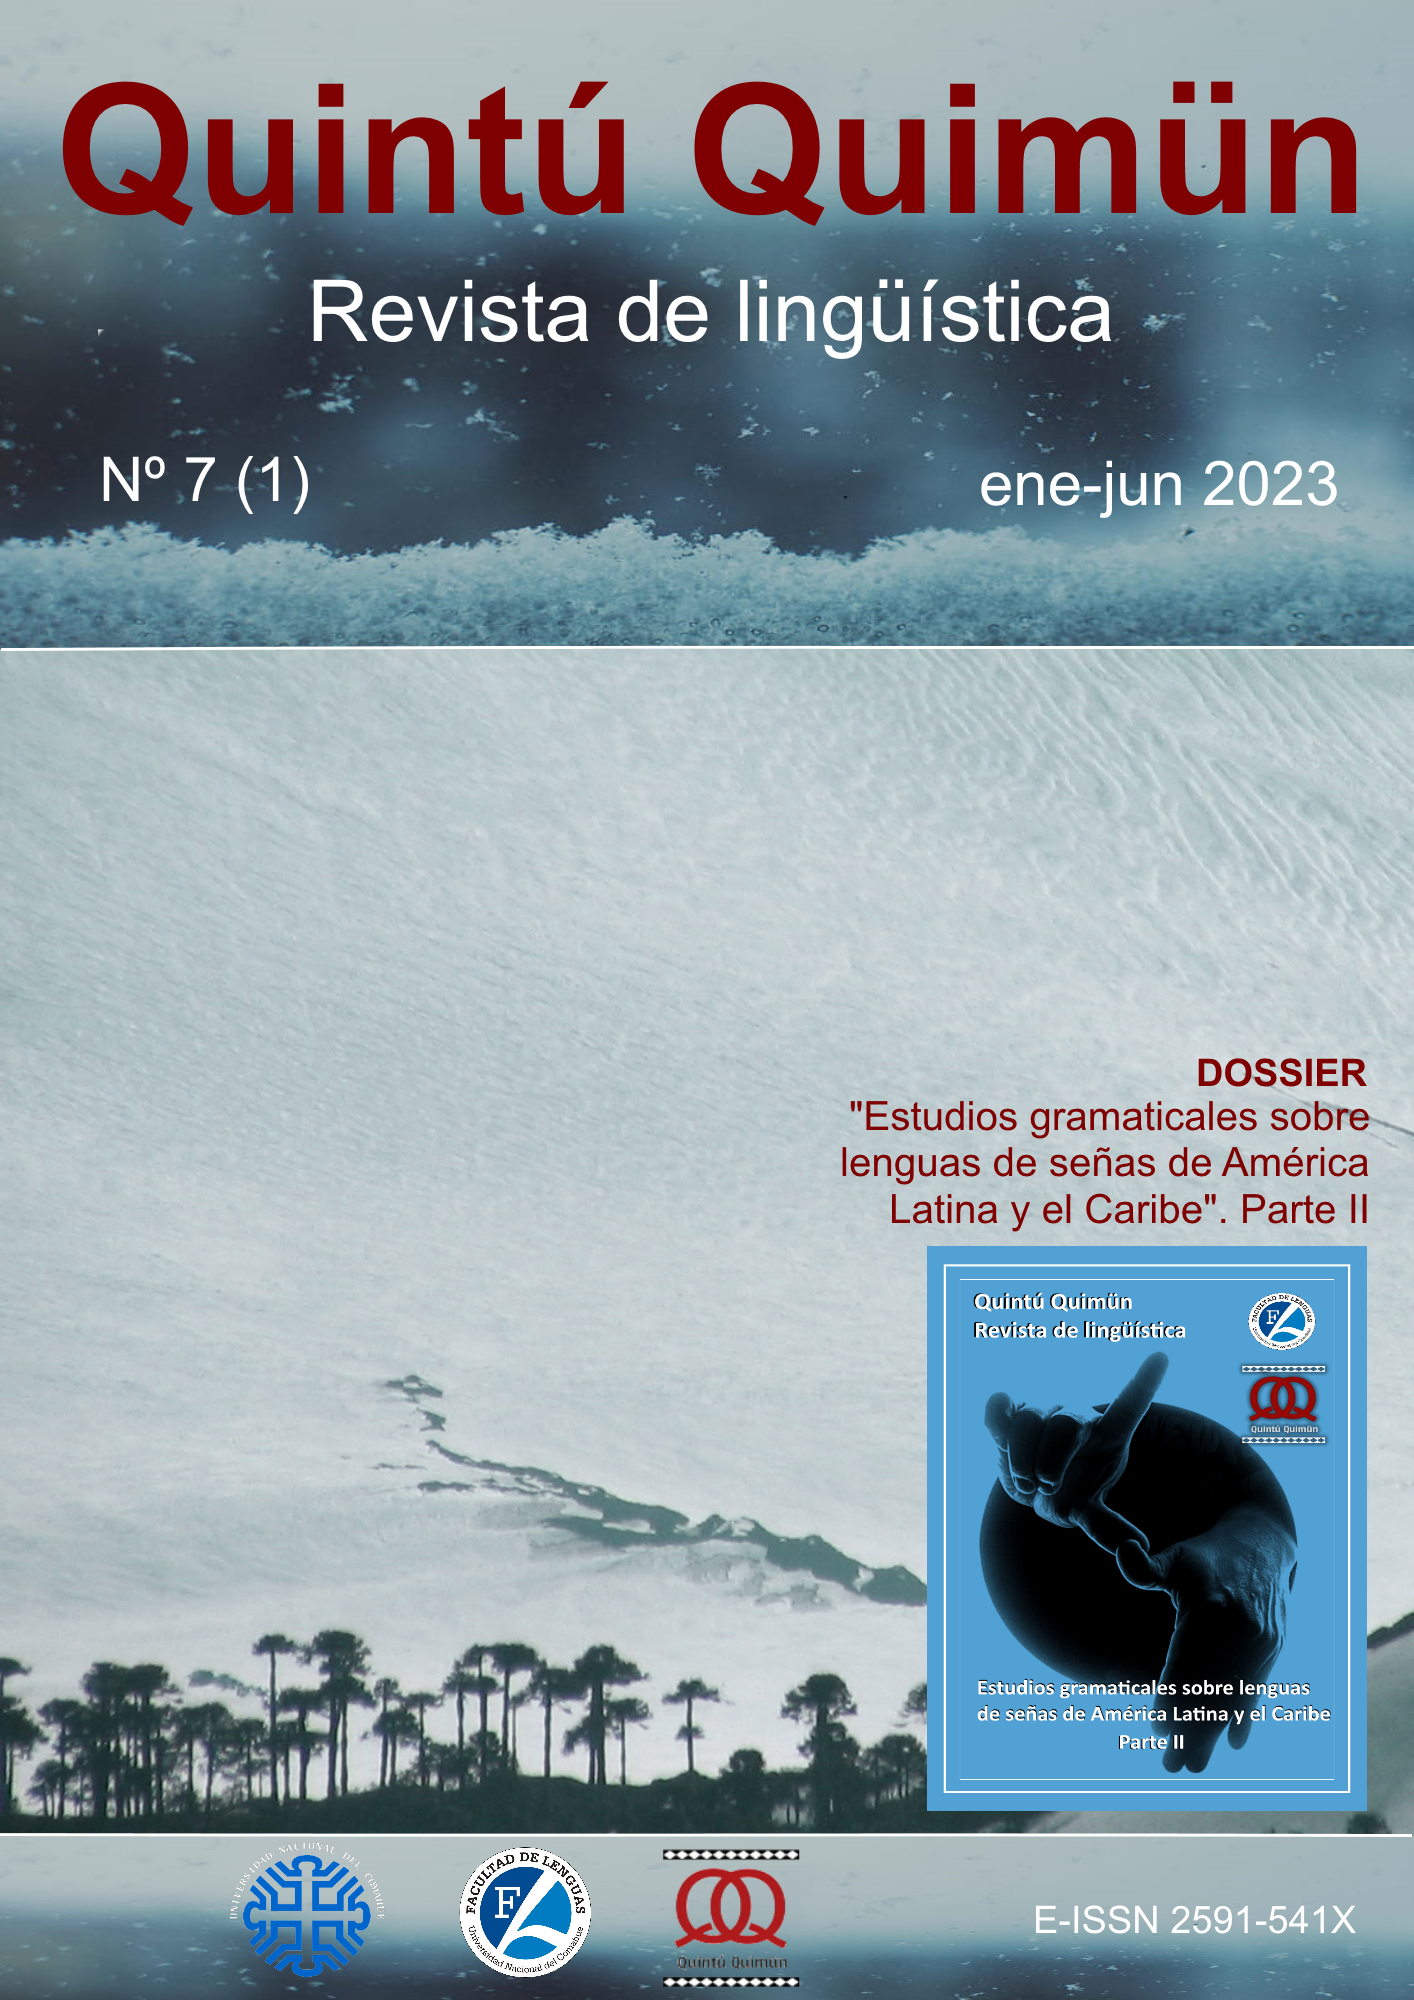 Tapa del número 7, 2 de 2023 de la revista Quntú Quimün. Fondo con imágenes de invierno, hielo y nieve.